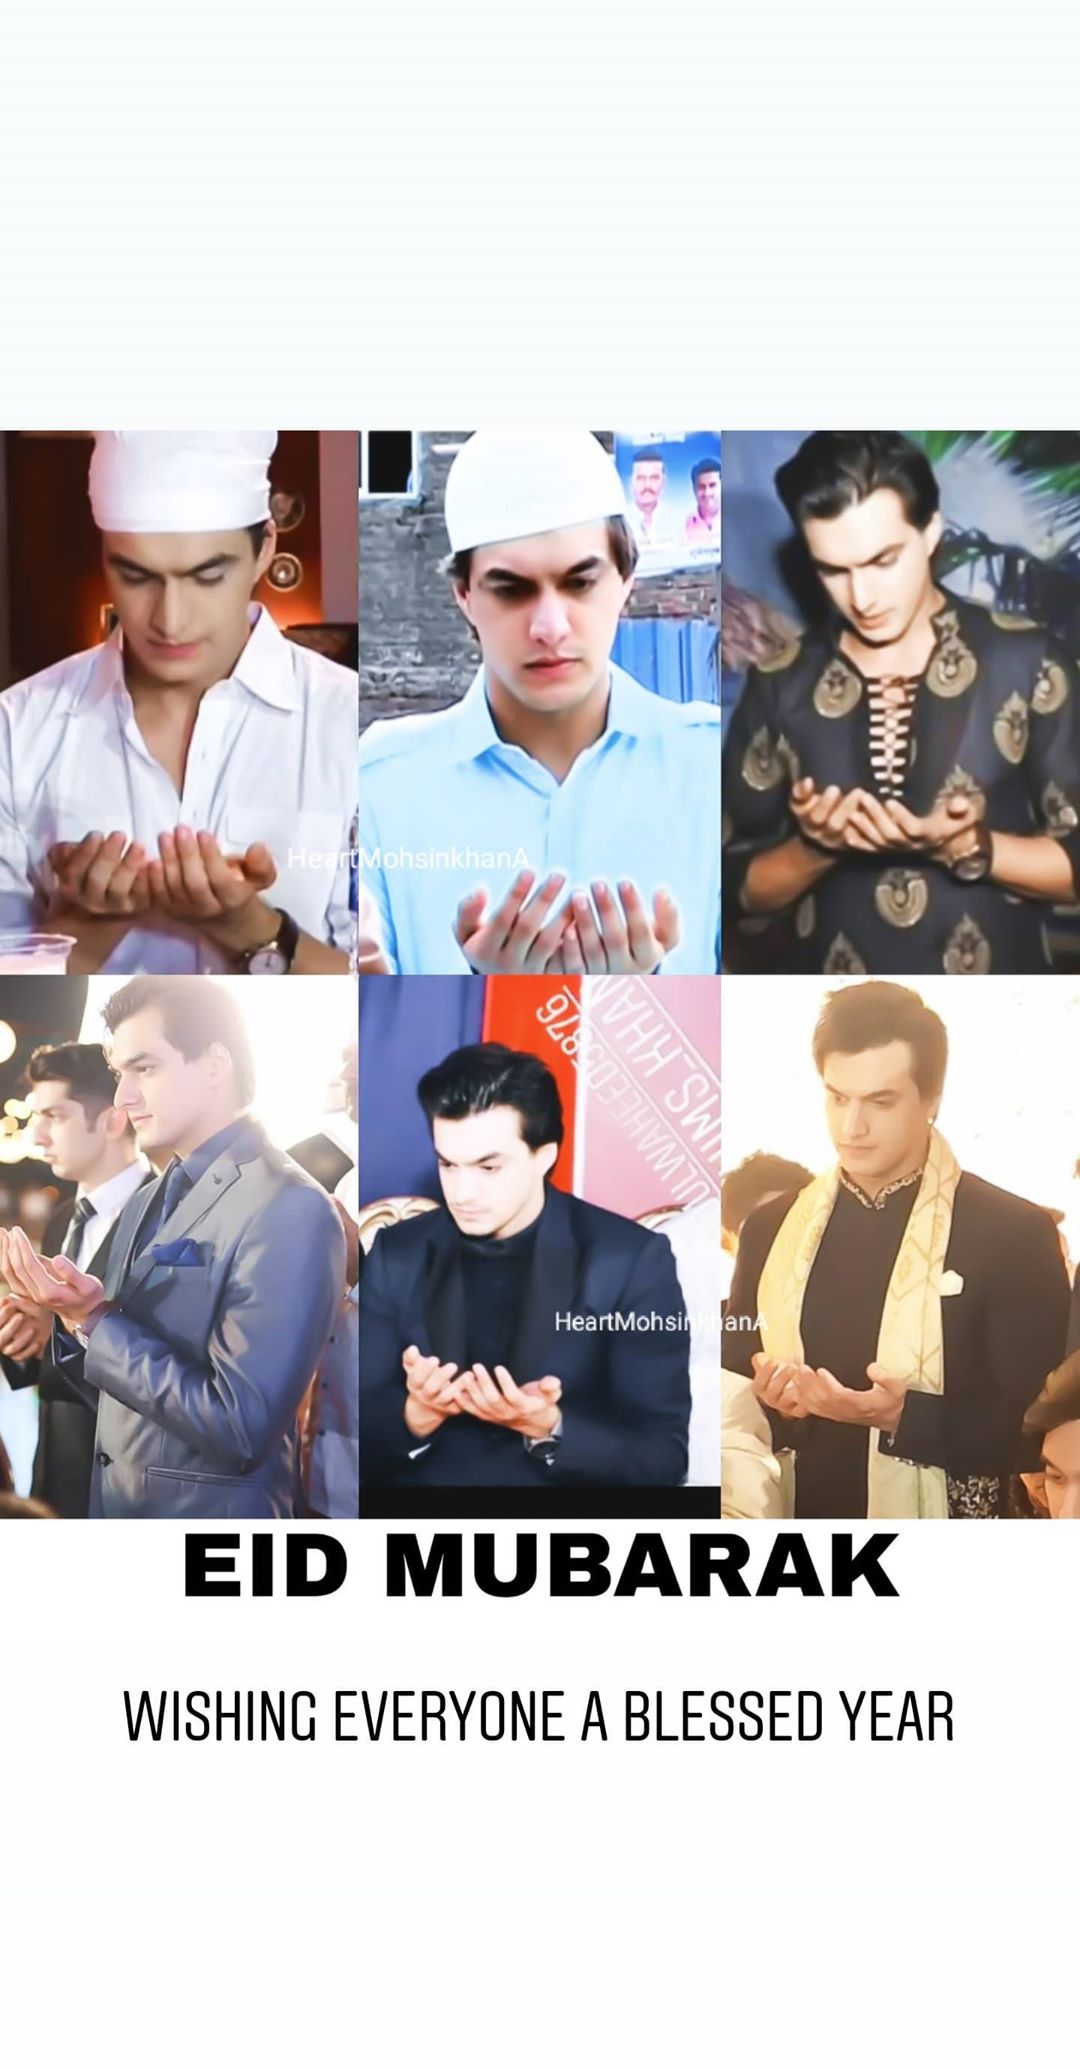 Mohsin Khan wishes Eid Mubarak to fans